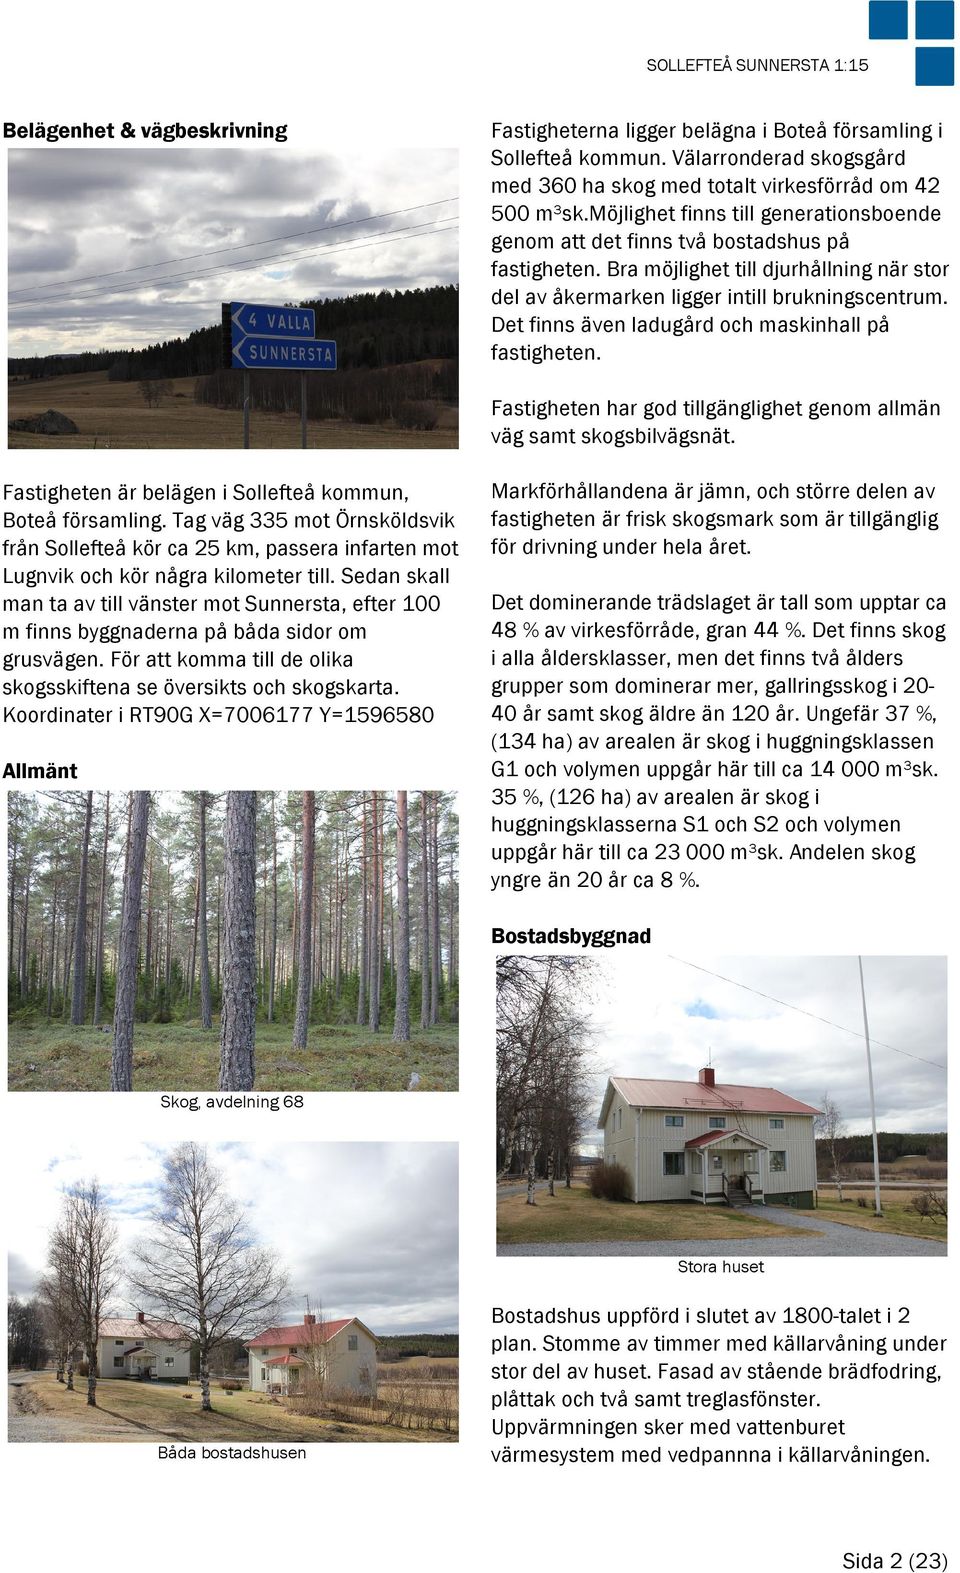 Det finns även ladugård och maskinhall på fastigheten. Fastigheten har god tillgänglighet genom allmän väg samt skogsbilvägsnät. Fastigheten är belägen i Sollefteå kommun, Boteå församling.